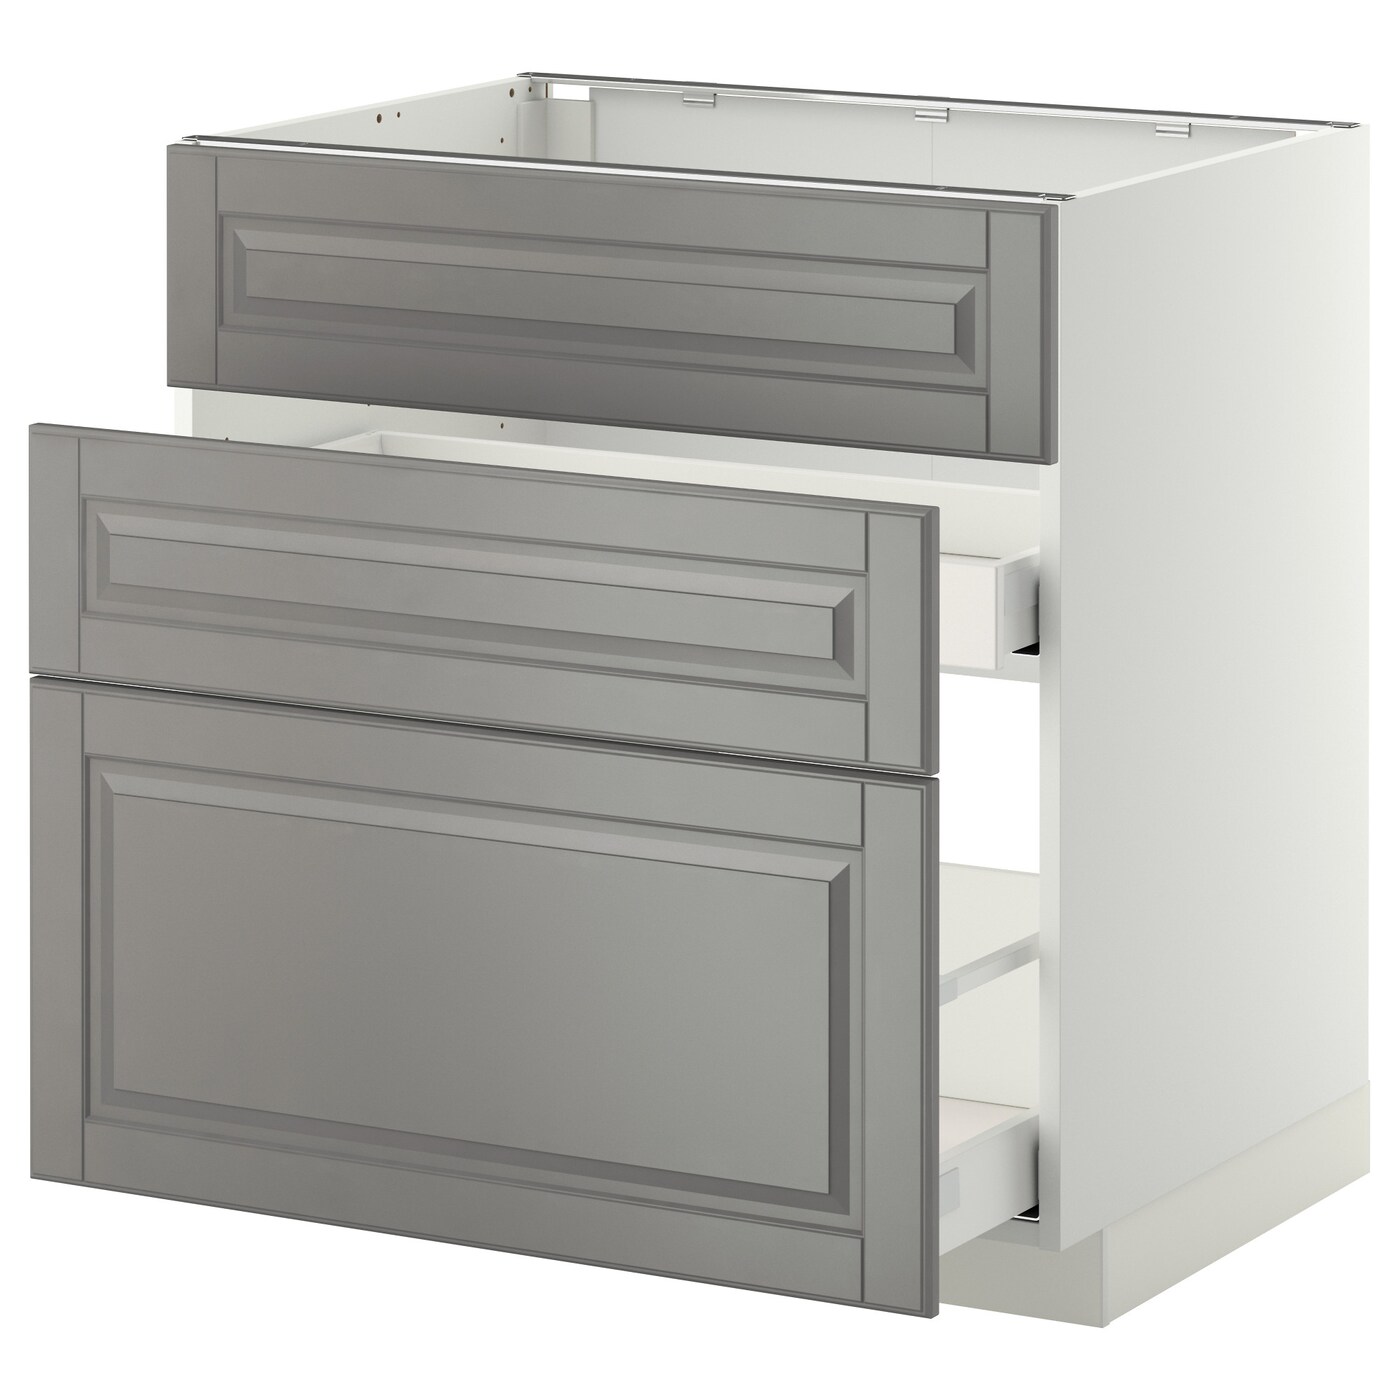 Напольный кухонный шкаф  - IKEA METOD MAXIMERA, 88x62x80см, белый/серый, МЕТОД МАКСИМЕРА ИКЕА